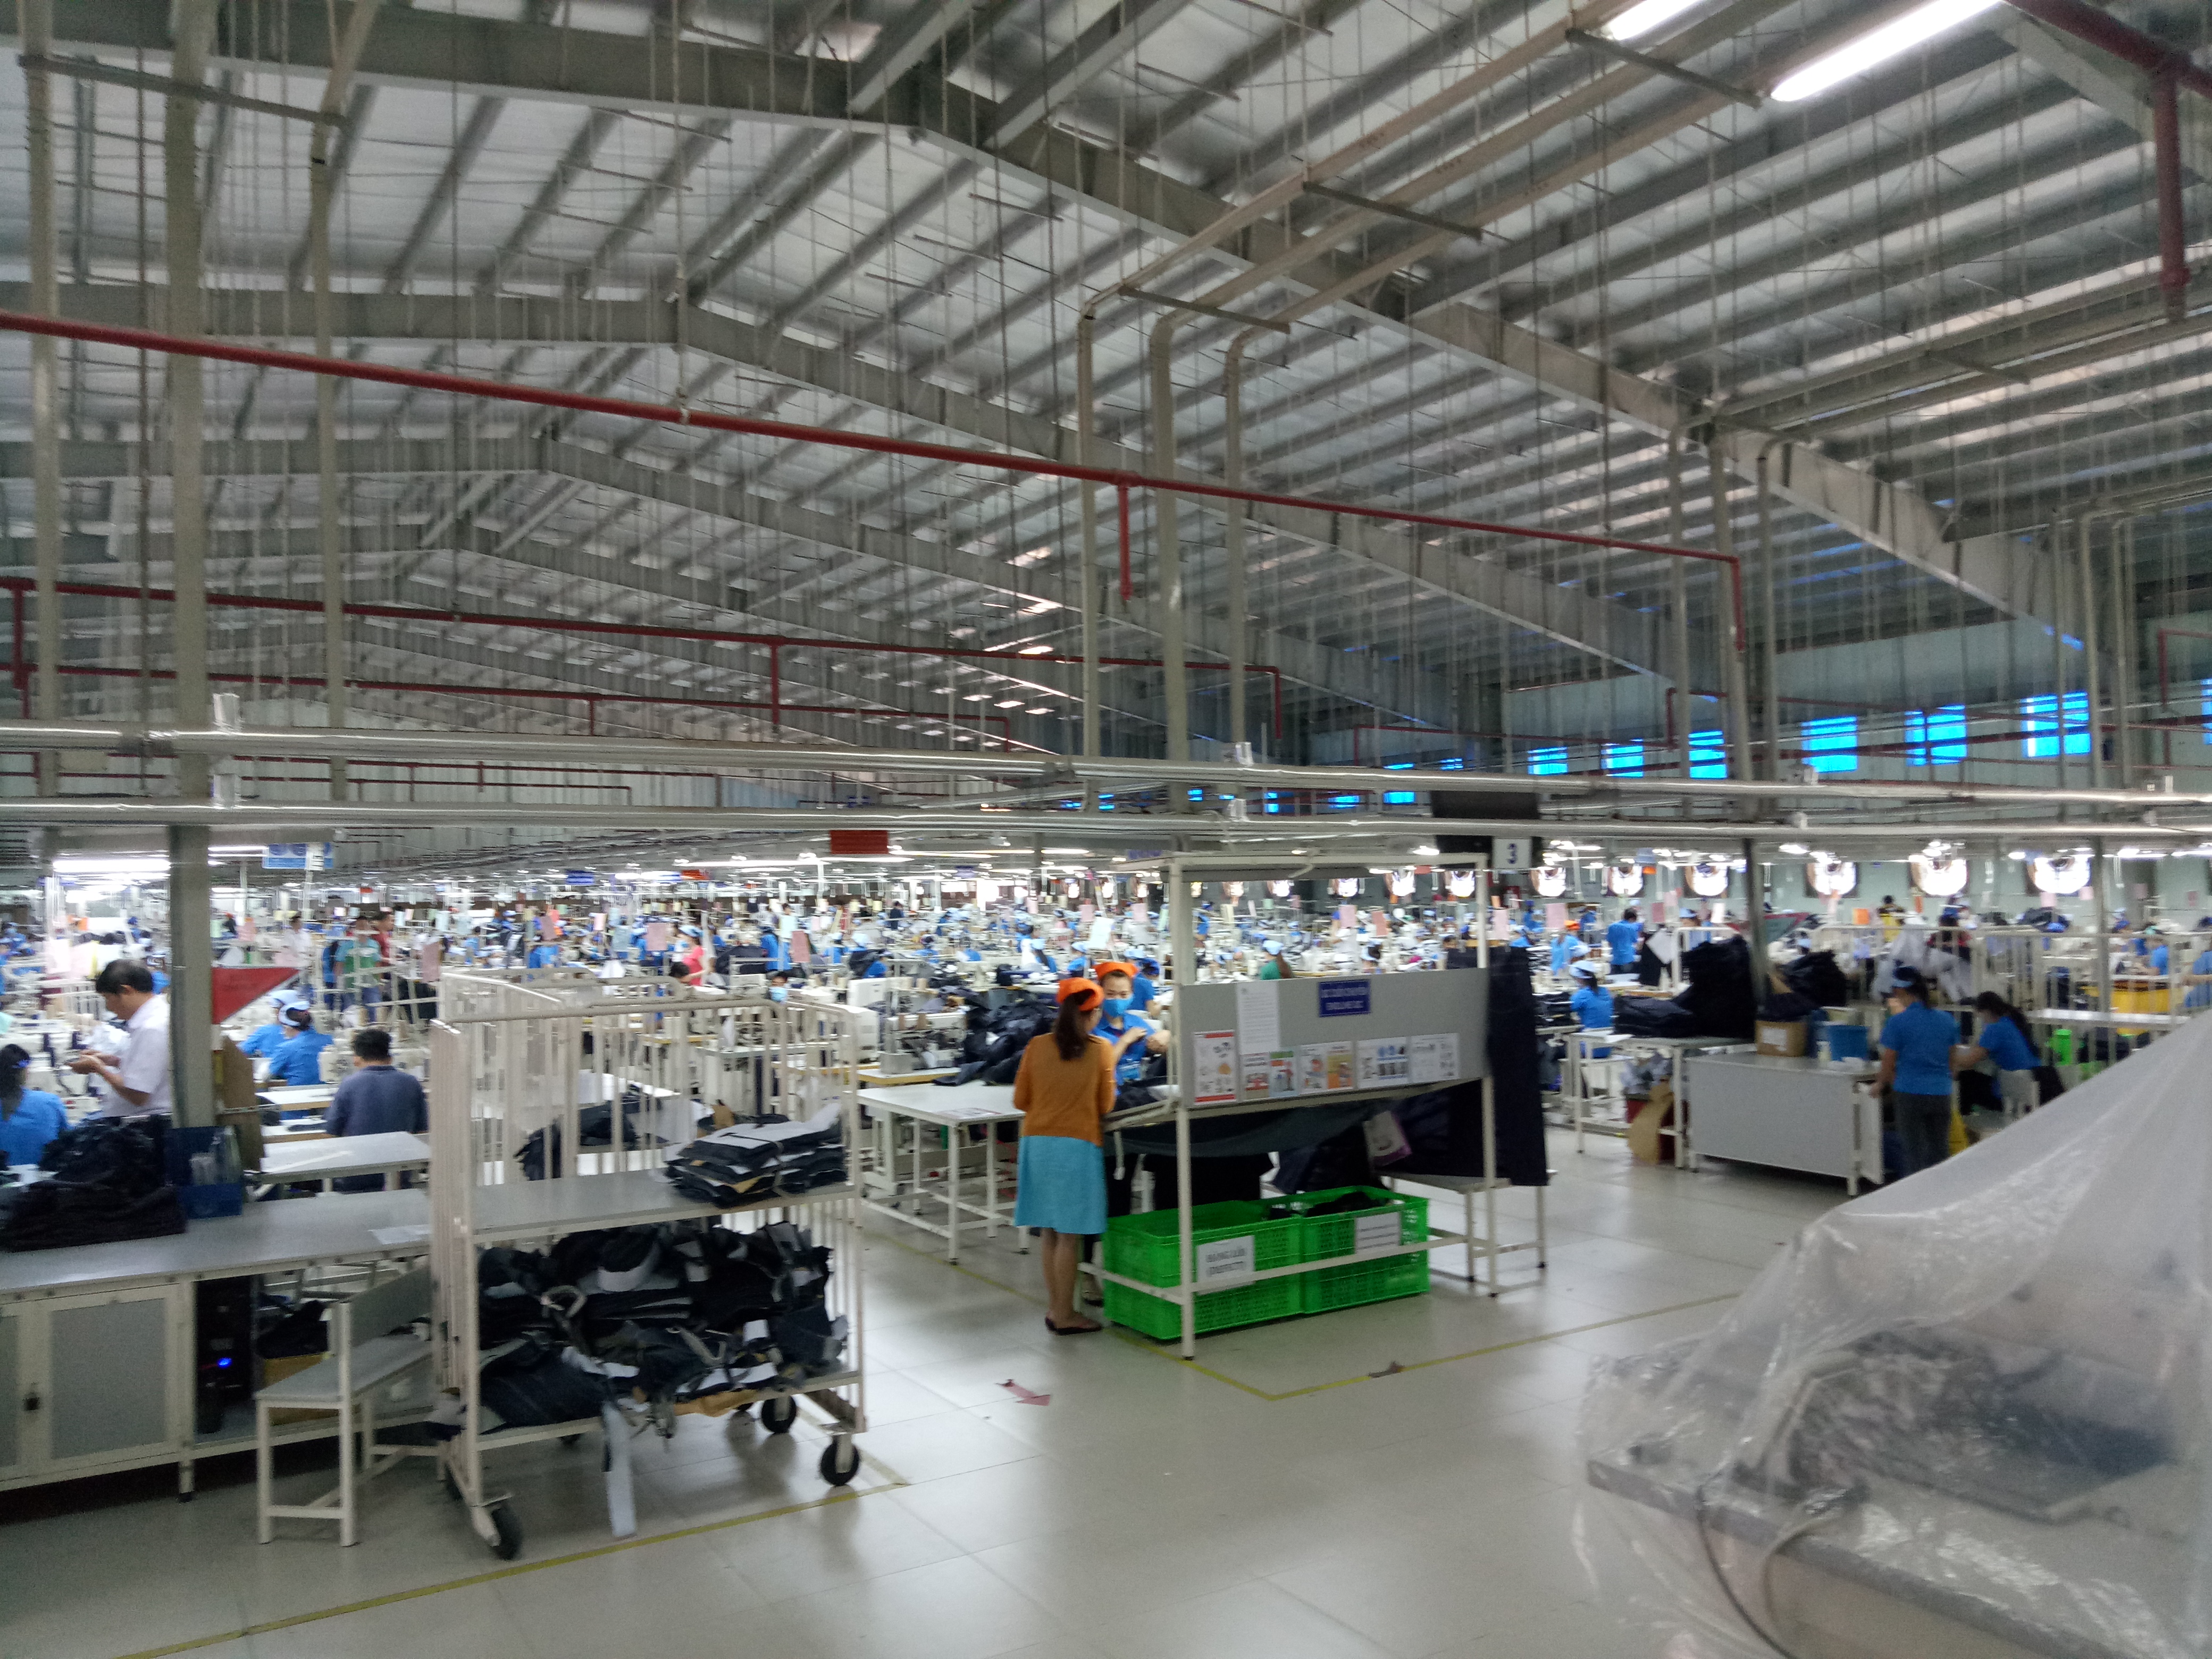 Bán gấp xưởng may 7000m2 đất 10500m2 trong KCN Trảng Bàng, Tây Ninh